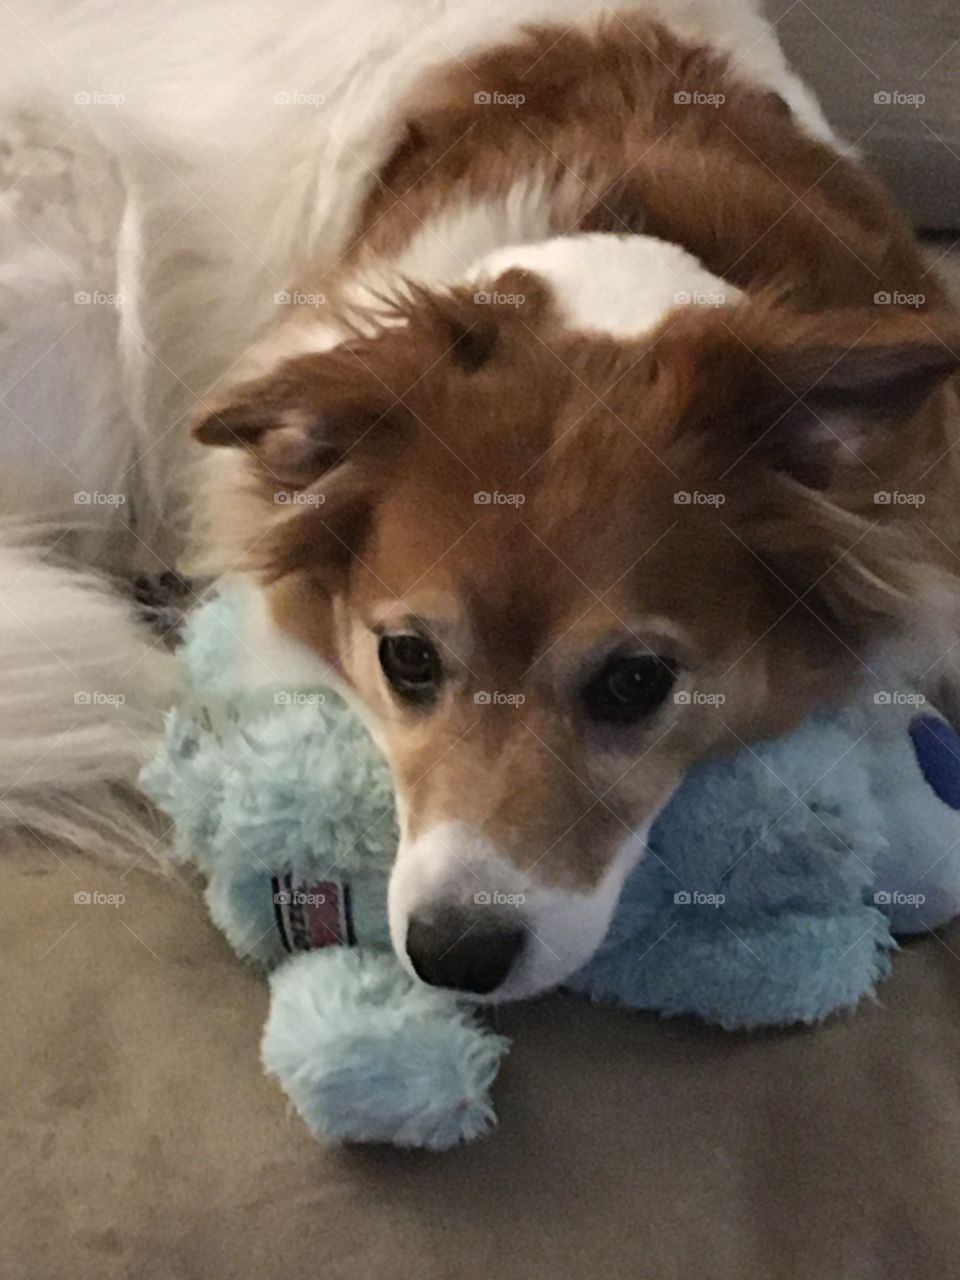 She loves her stuffy